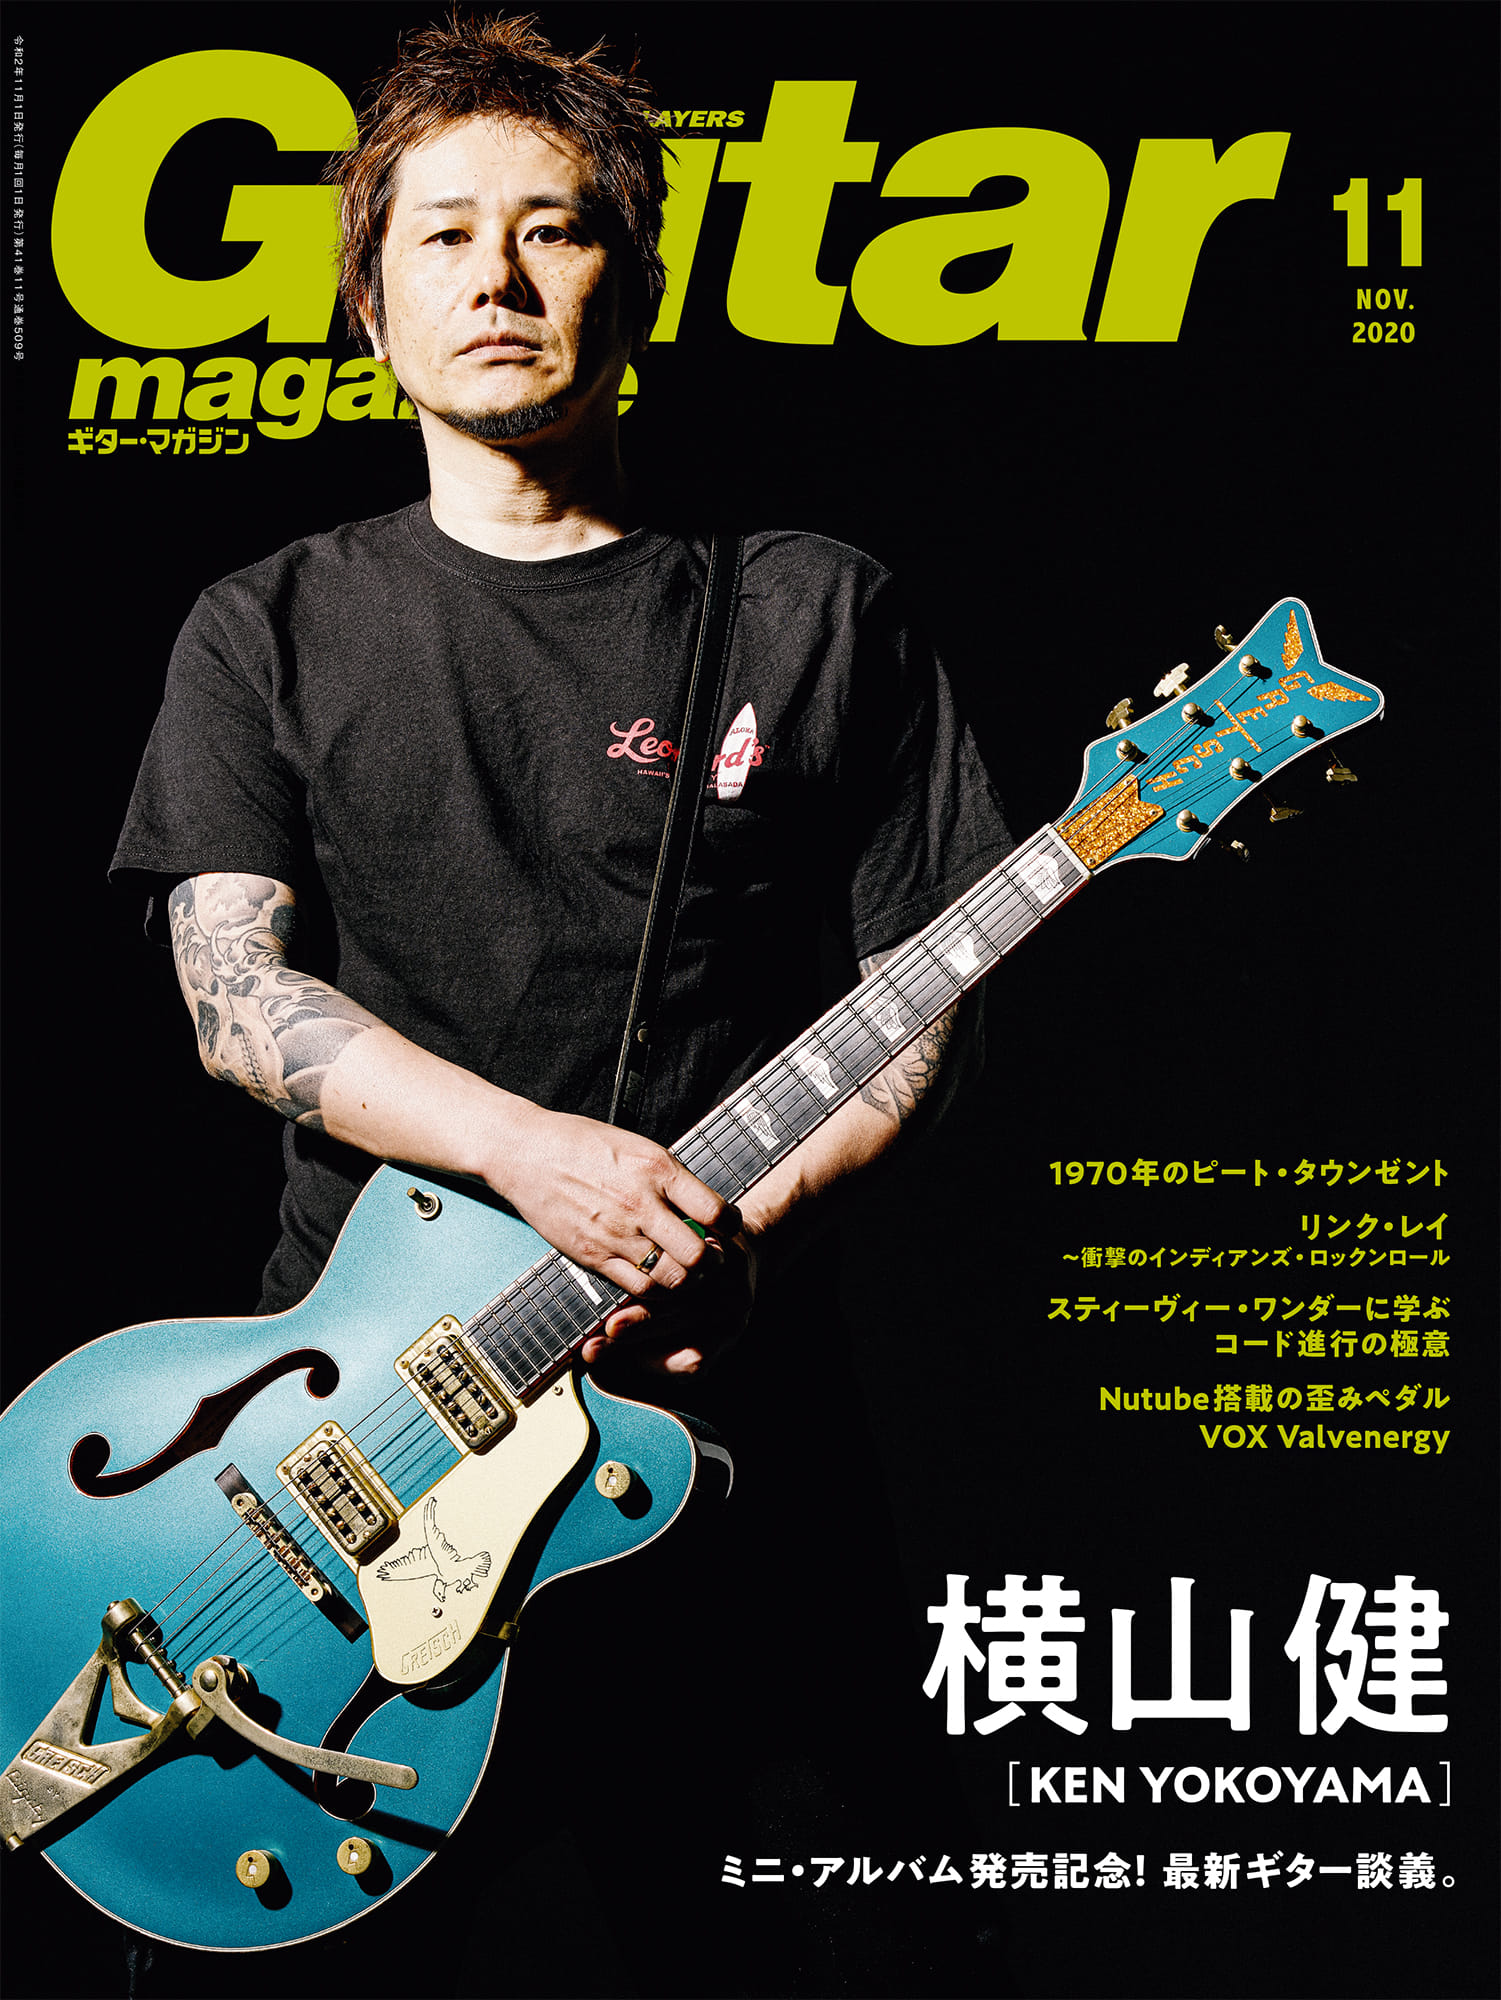 横山健、ギター・マガジン11月号に巻頭表紙で登場！ | Ken Yokoyama 